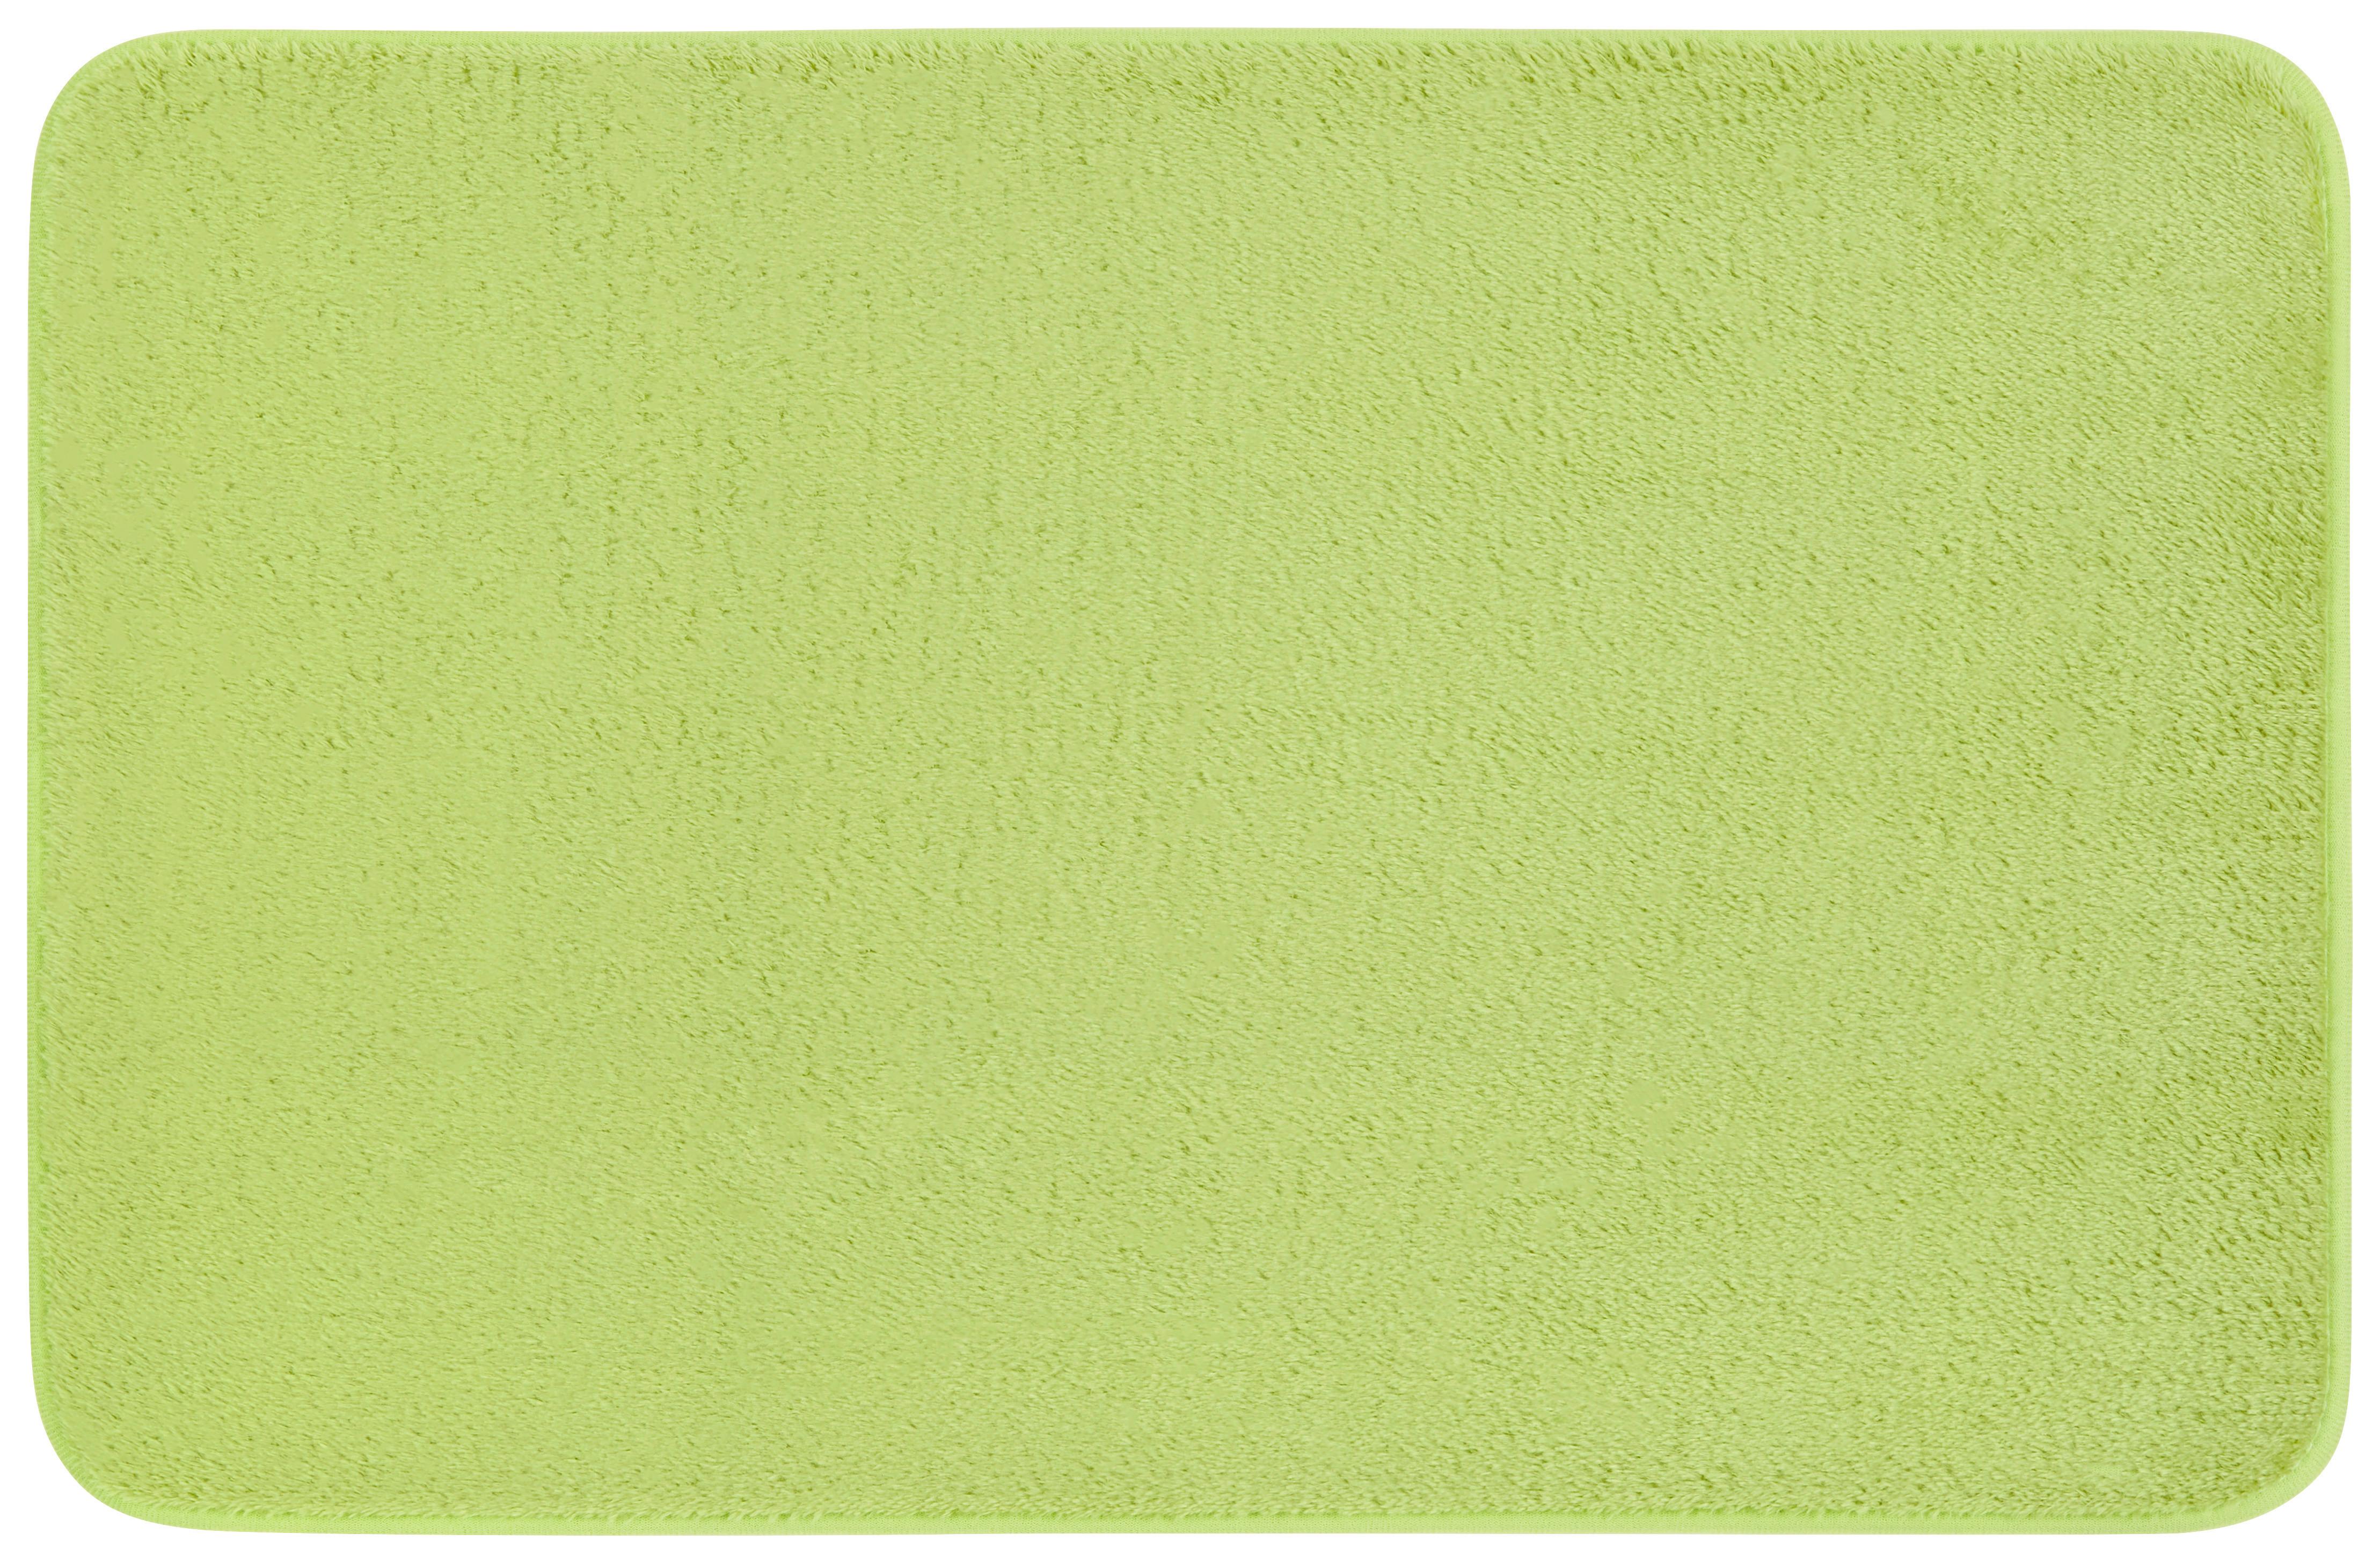 Badematte Lisa Grün 45x70 cm Rutschhemmend - Grün, KONVENTIONELL, Textil (45/70cm) - Ondega